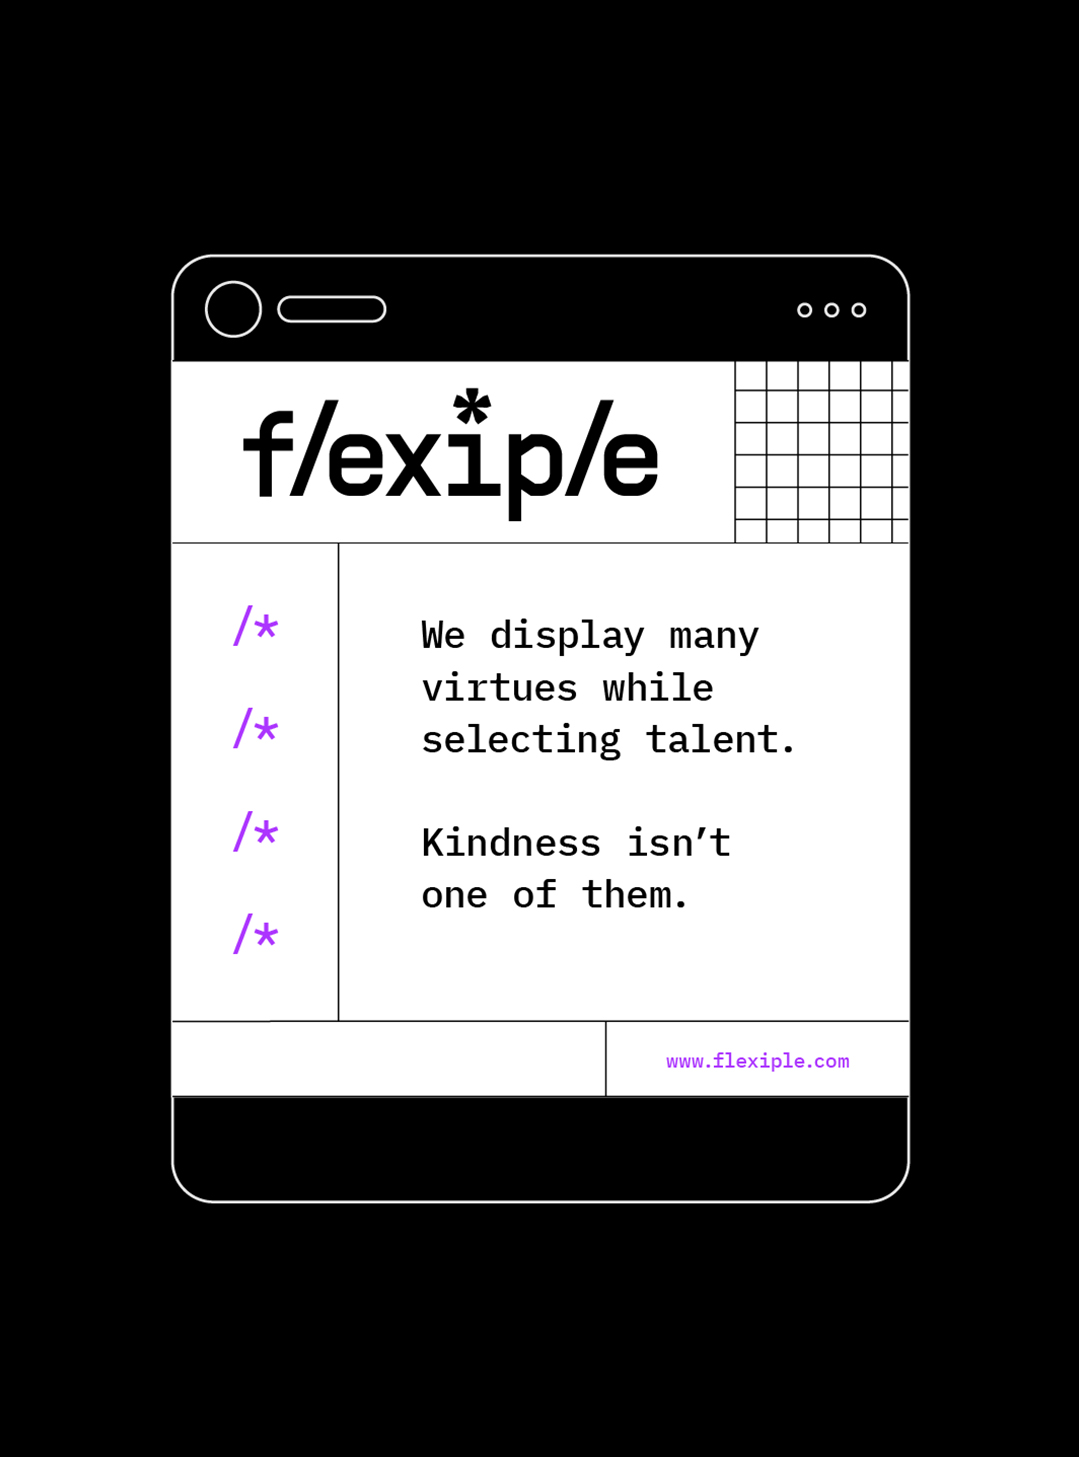 FlexipleDoc-Image35-100